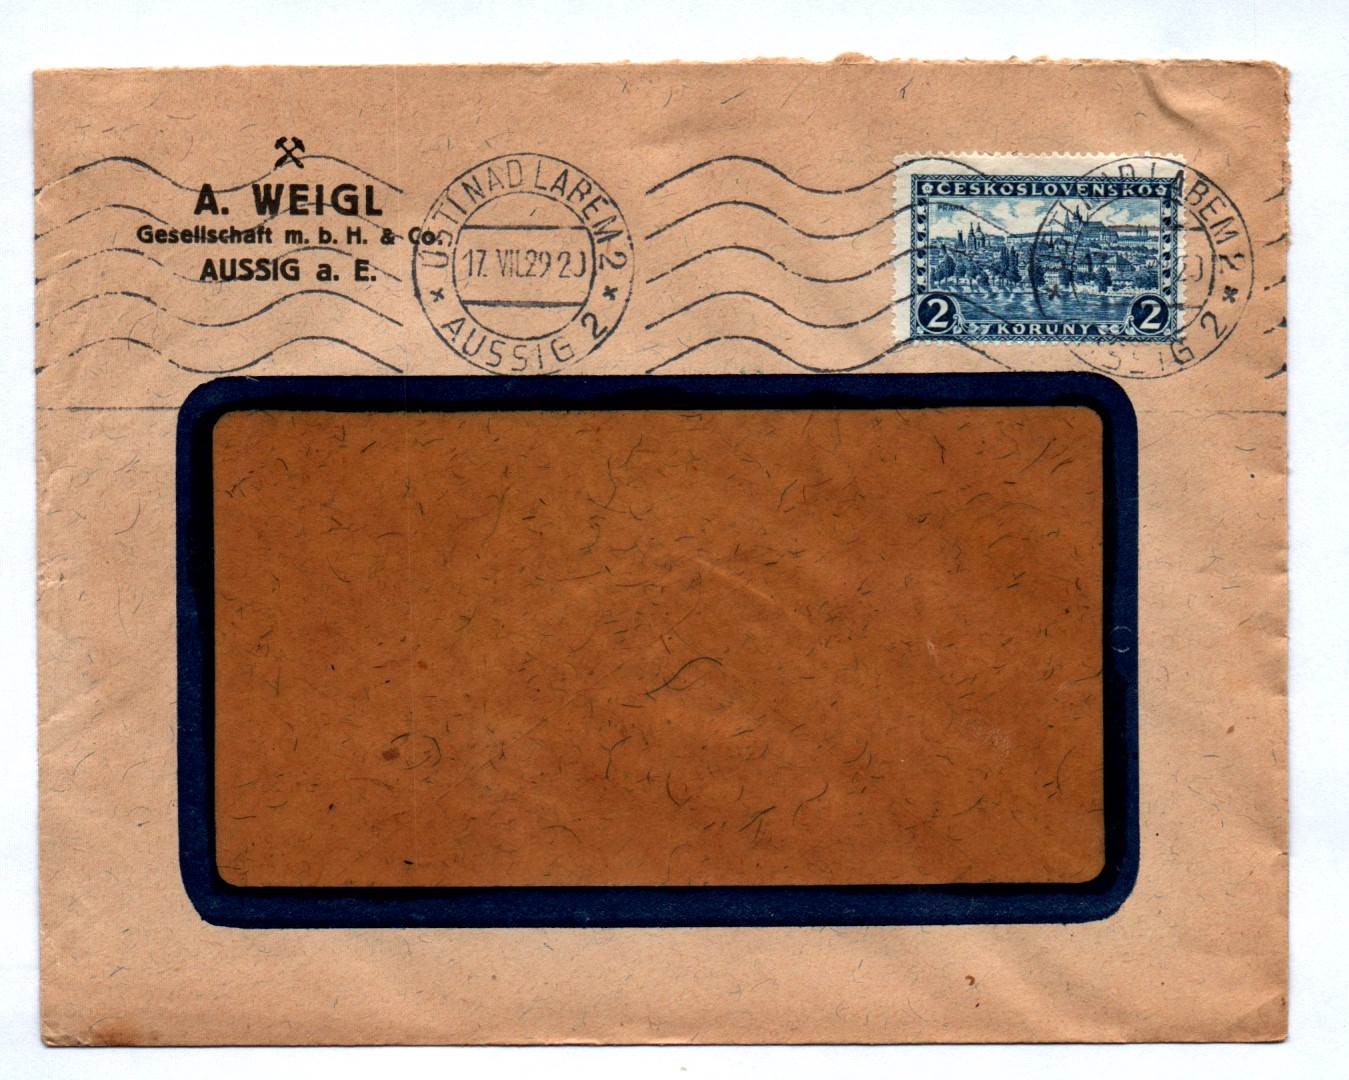 Brief A Weigl Gesellschaft mbhH & Co Aussig aE 1929